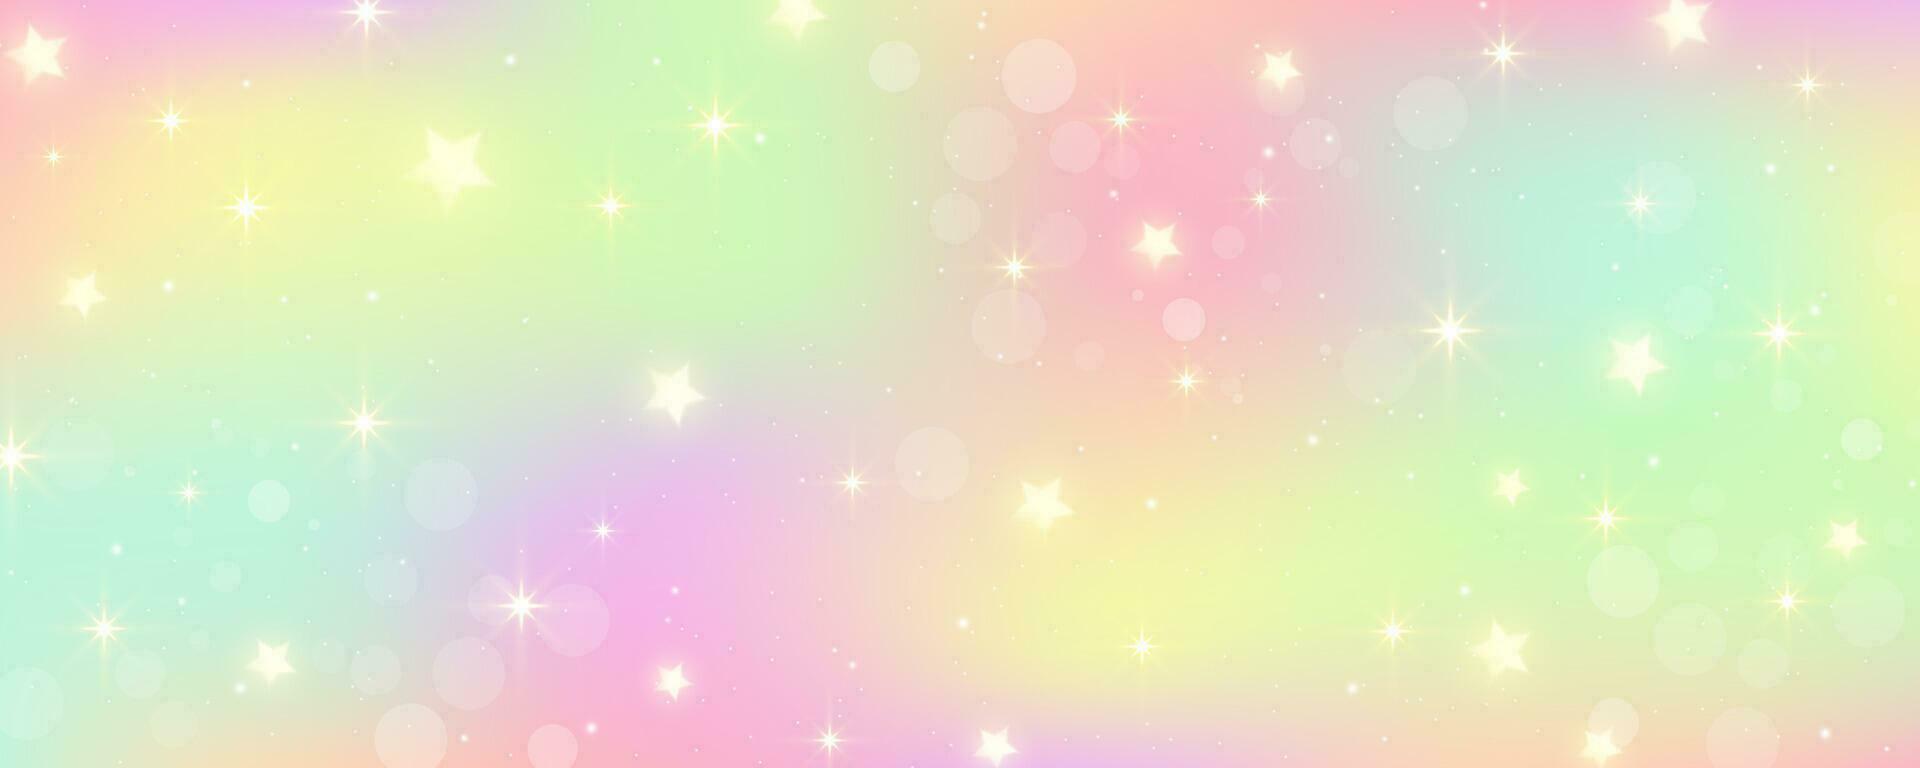 Regenbogen Einhorn Hintergrund. Pastell- Rosa Farbe Himmel mit Sterne. holographisch Fantasie drucken mit Bokeh. Vektor Hintergrund zum Prinzessin Mädchen Design.